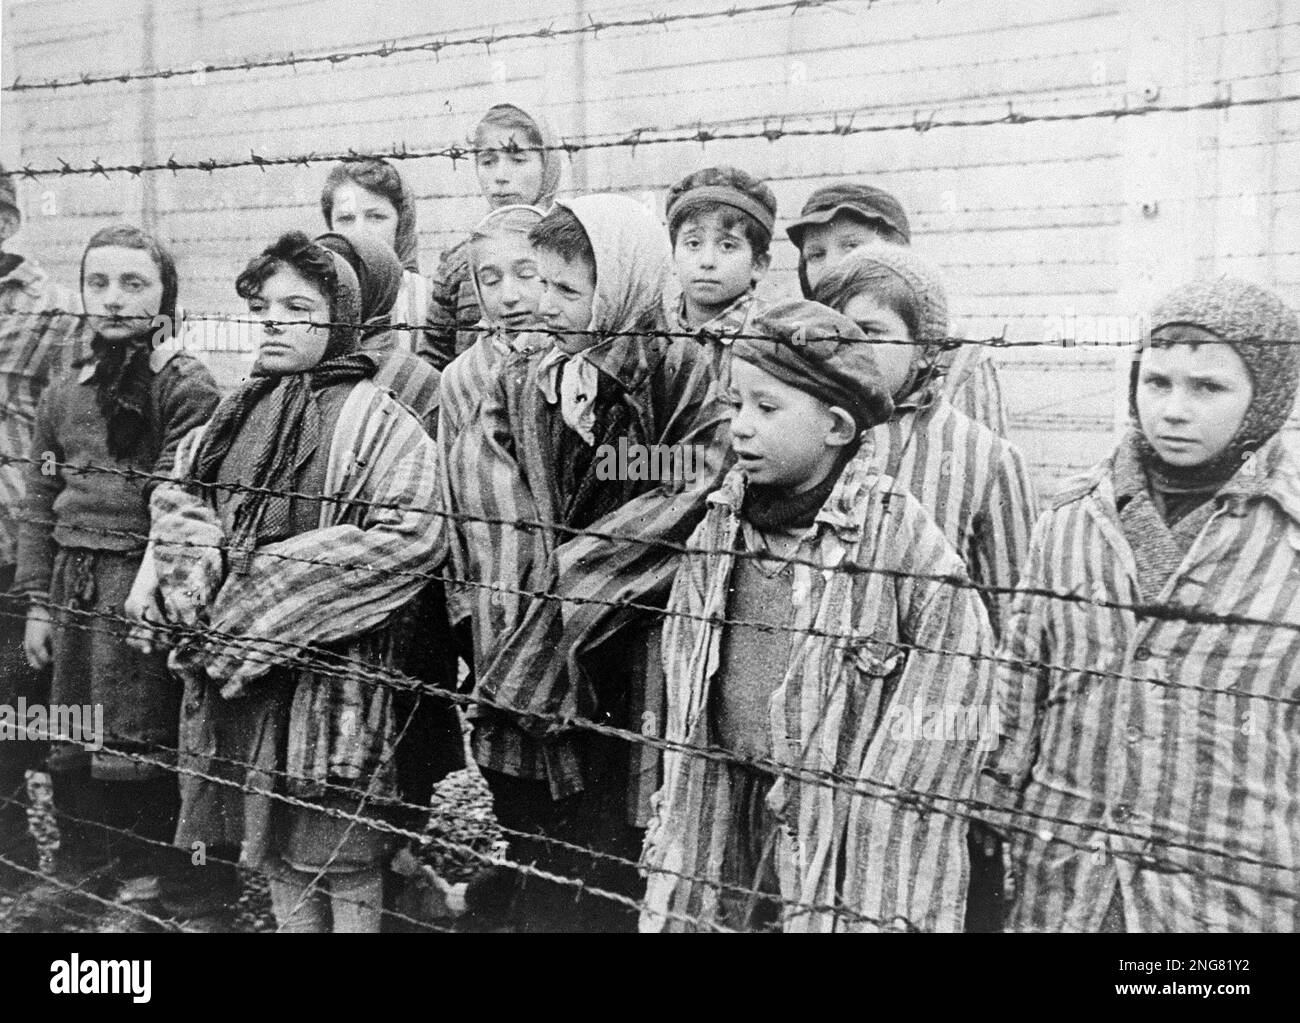 Gemelos judíos mantenidos vivos en Auschwitz para su uso en los experimentos médicos de Mengele. El Ejército Rojo liberó a estos niños en enero de 1945. Foto de stock